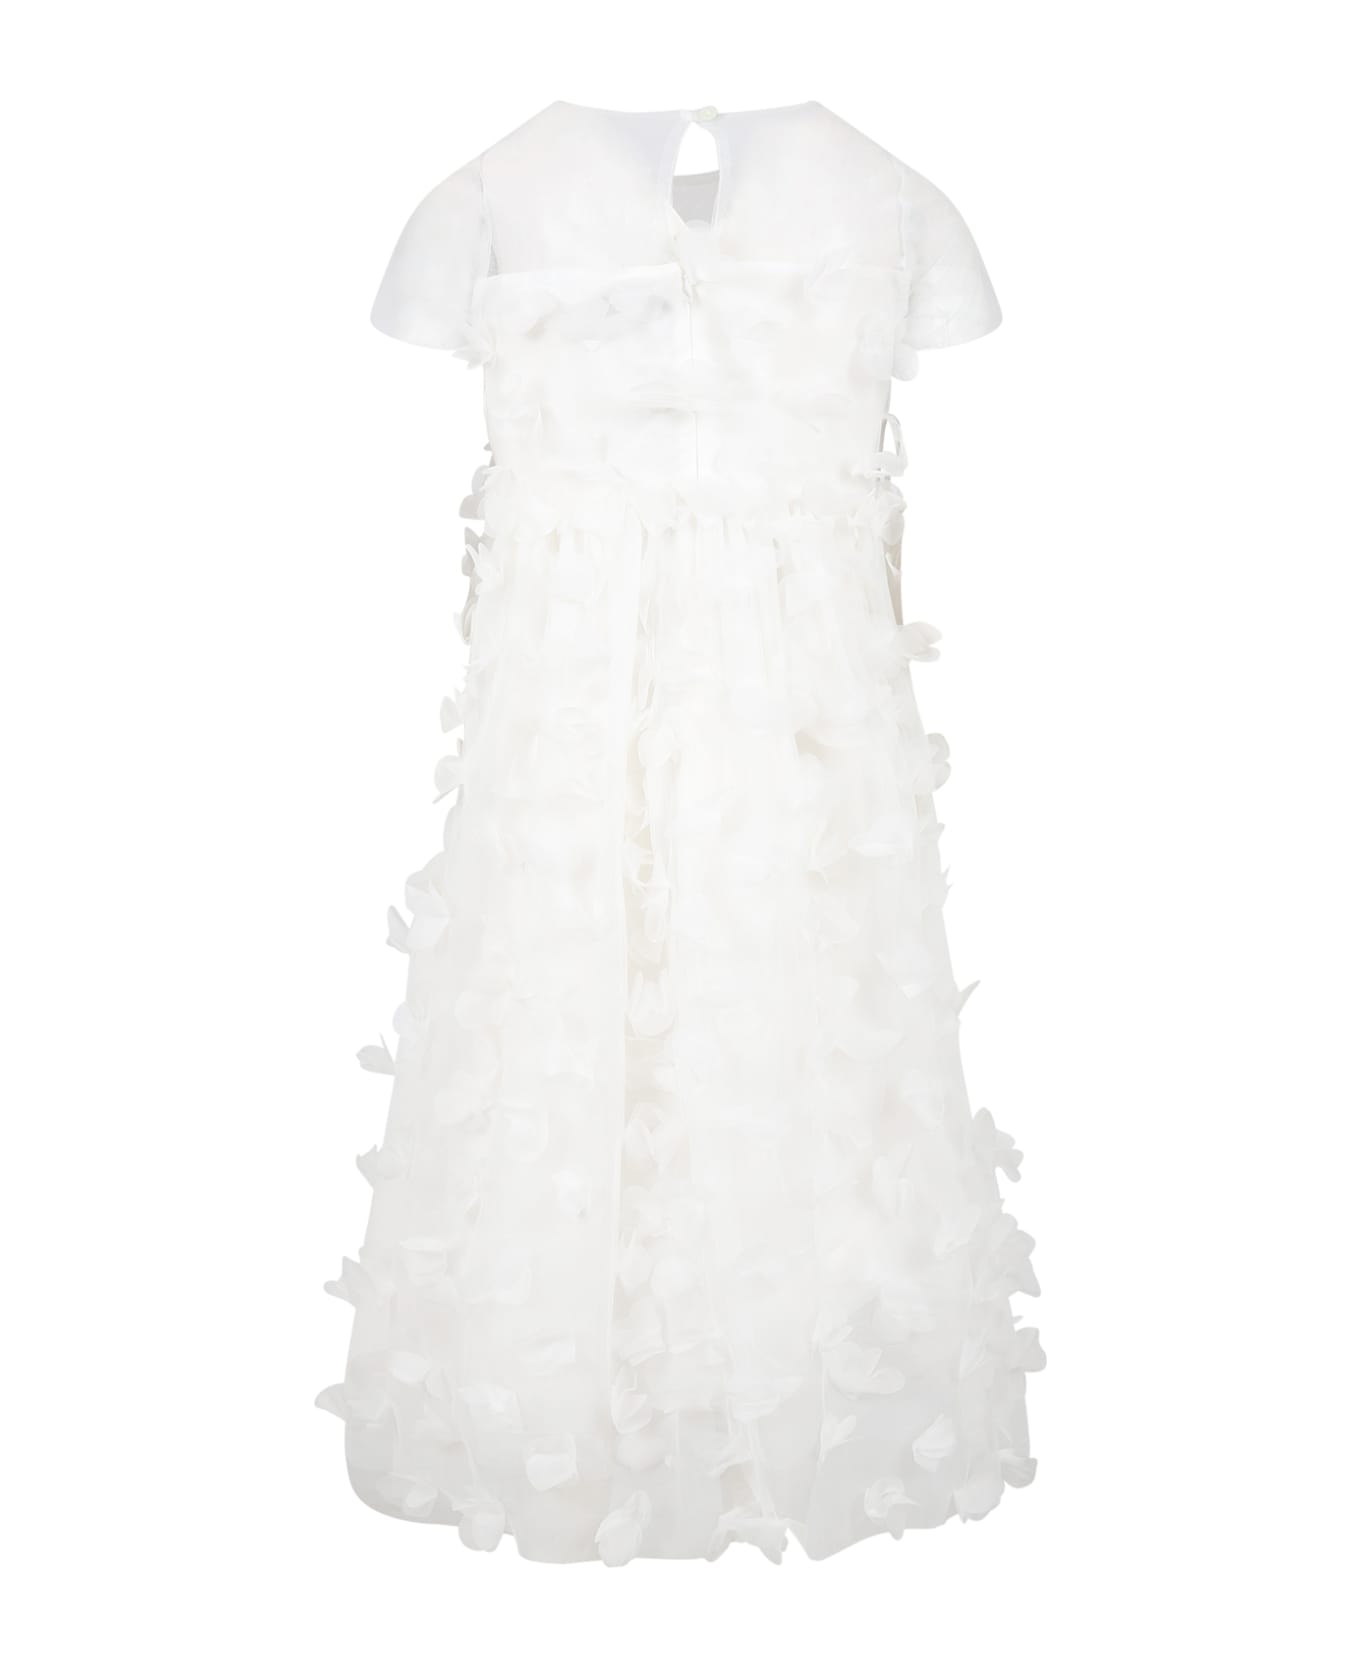 Simonetta White Dress For Girl With Tulle Applications - White